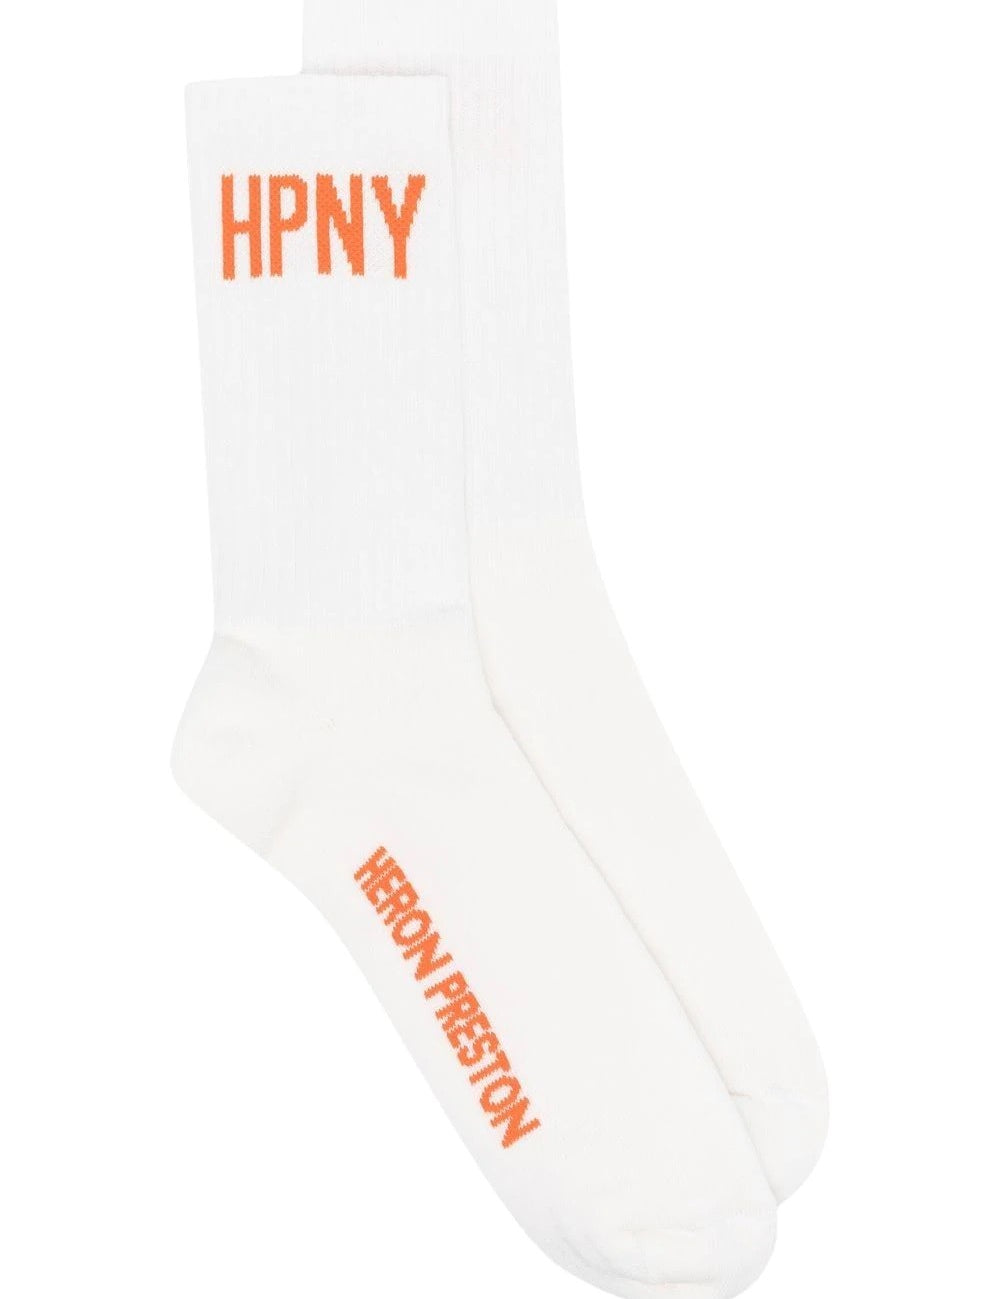 hpny-long-socks.jpg